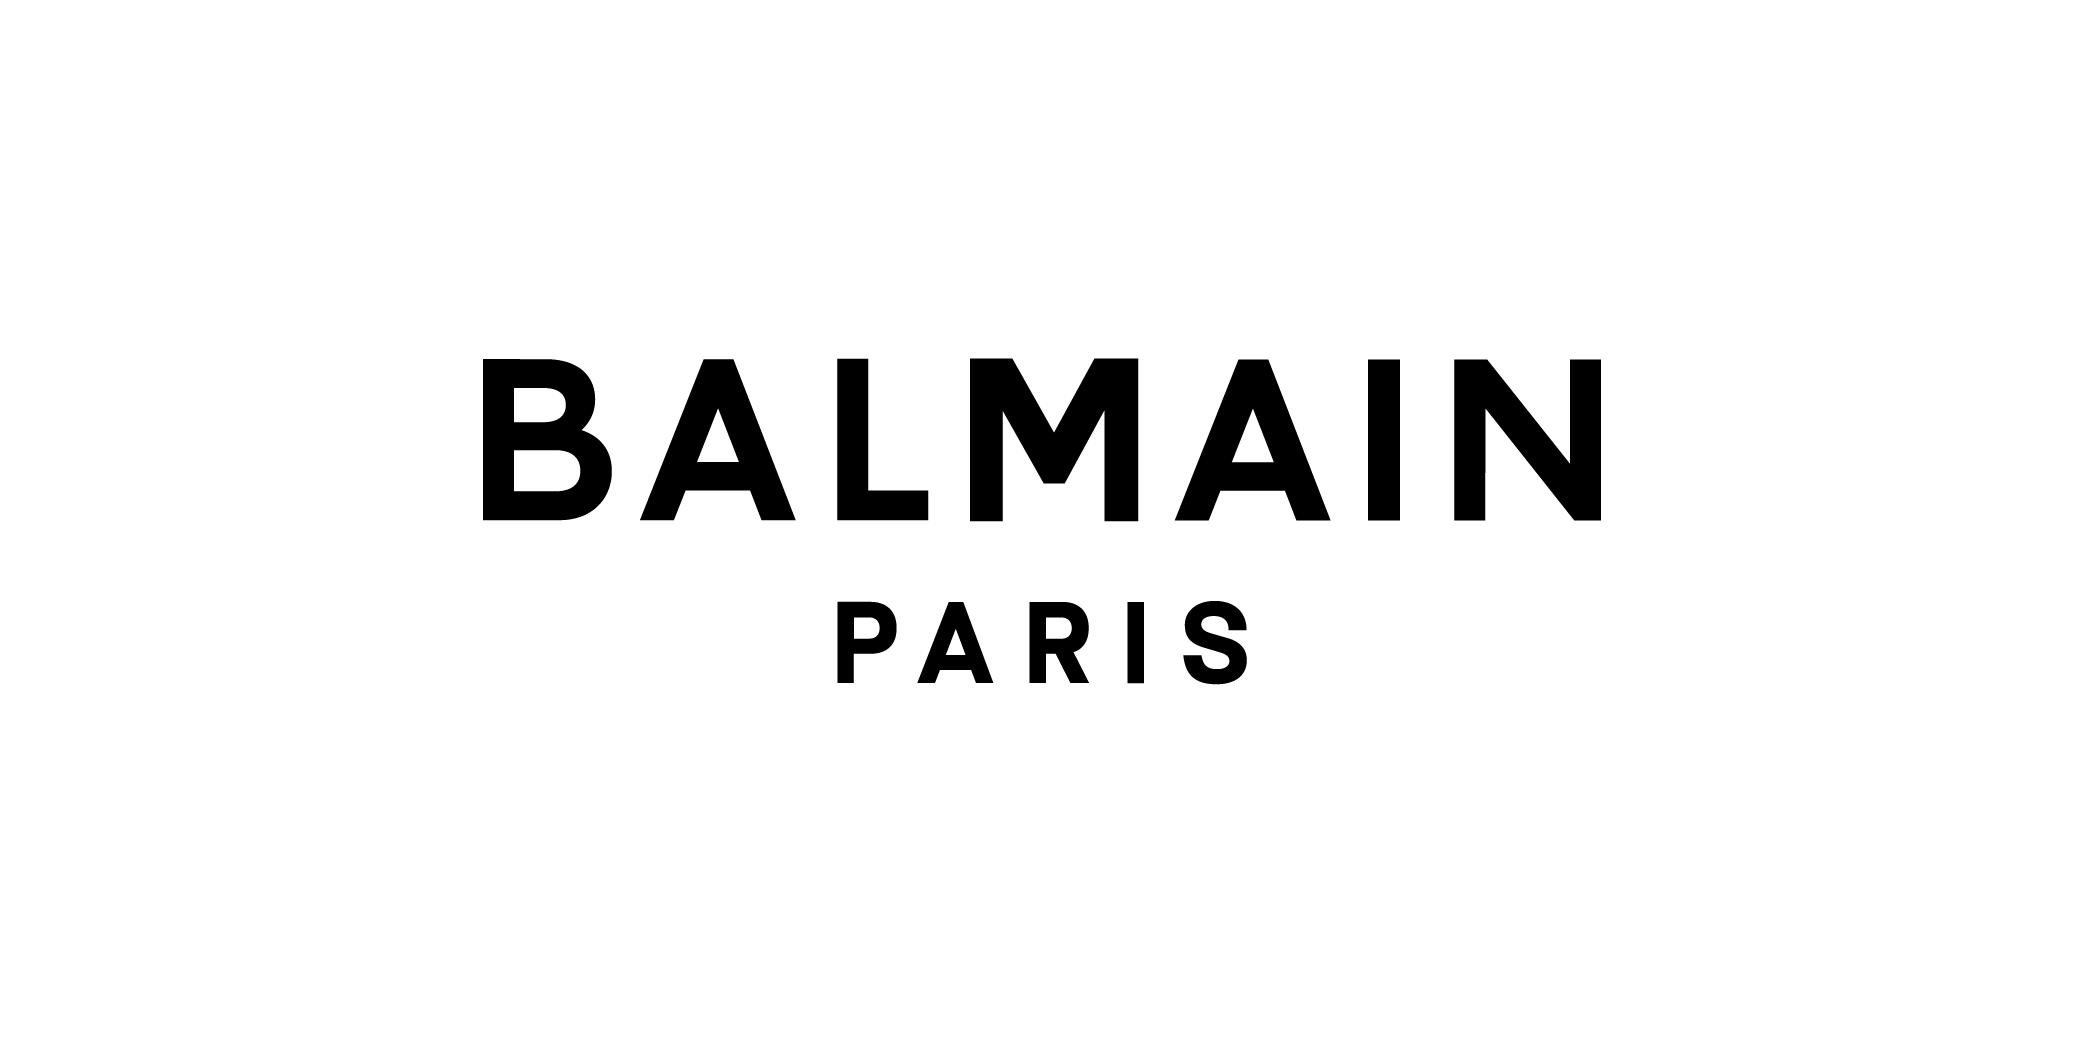 BALMAIN PARIS